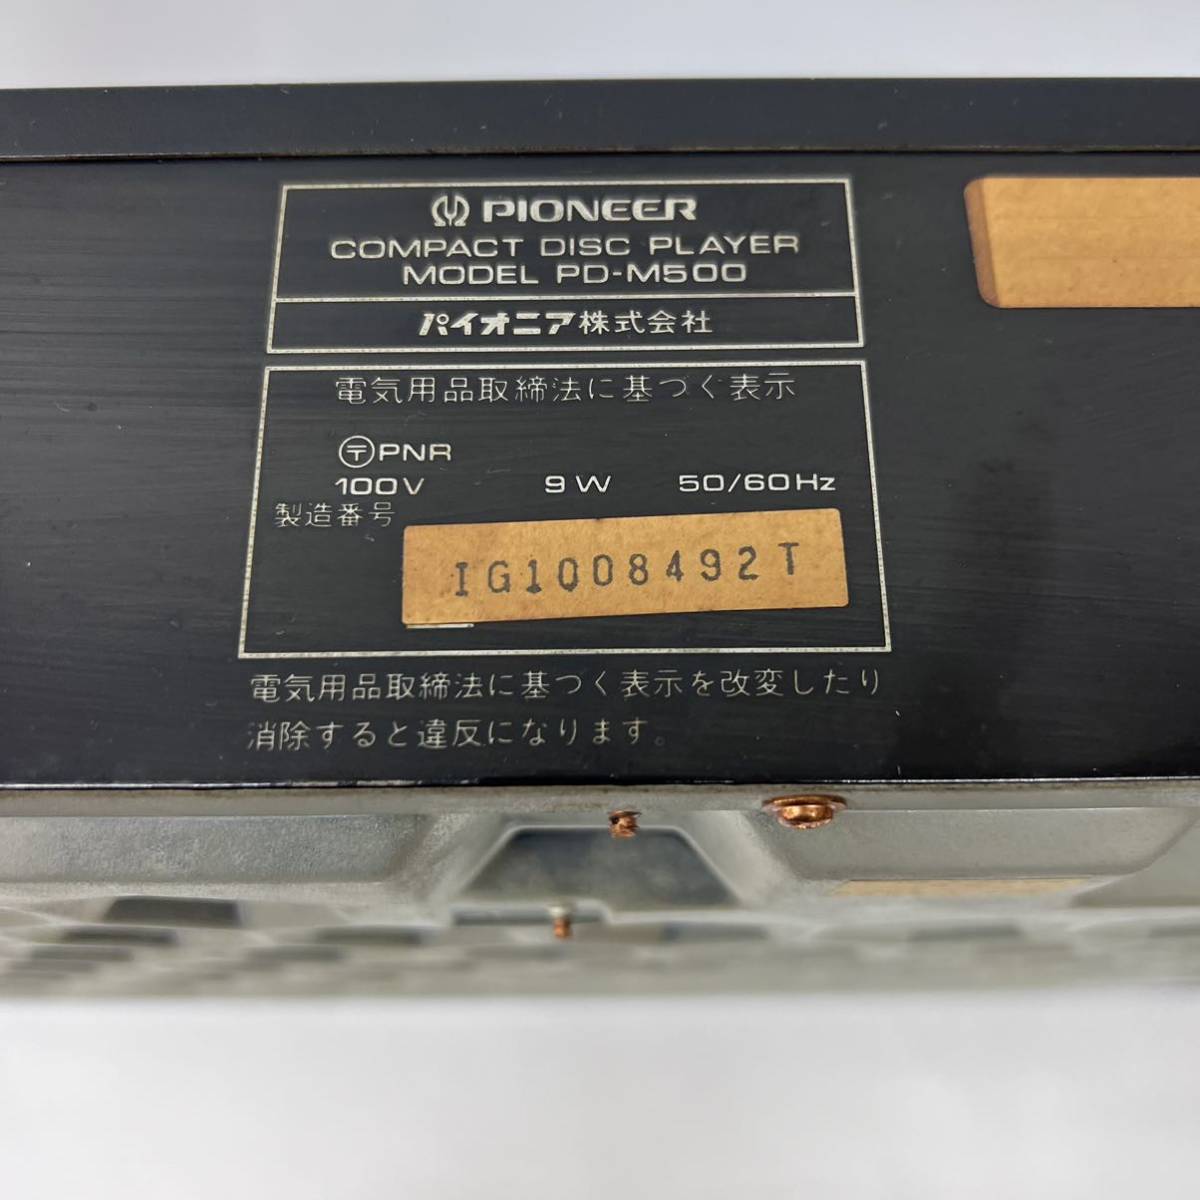 * рабочее состояние подтверждено PD-M500 pioneer Pioneer 6 листов CD changer [ часть с дефектом ]